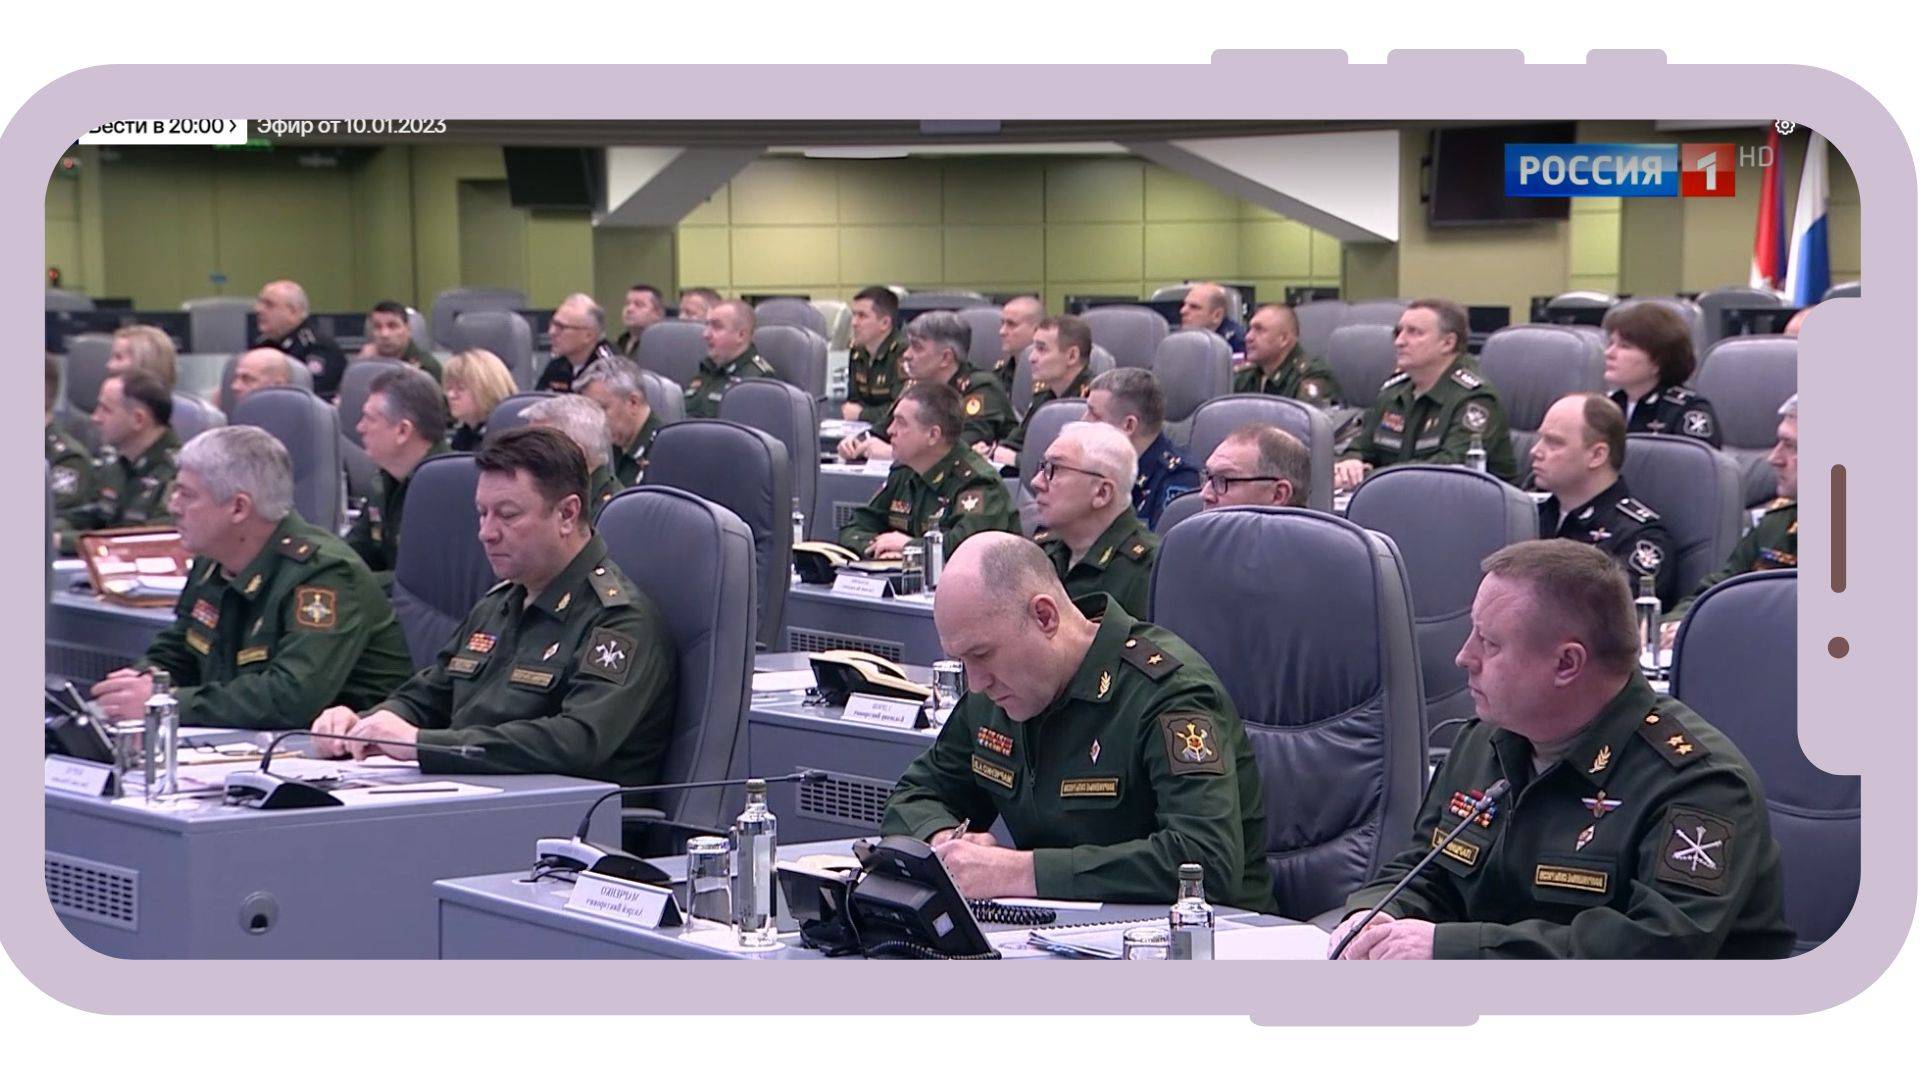 Grafika: w ramce telefonu komurkowego zdjęcie rosyjskich wojskowych notujących w sali konferencyjnej